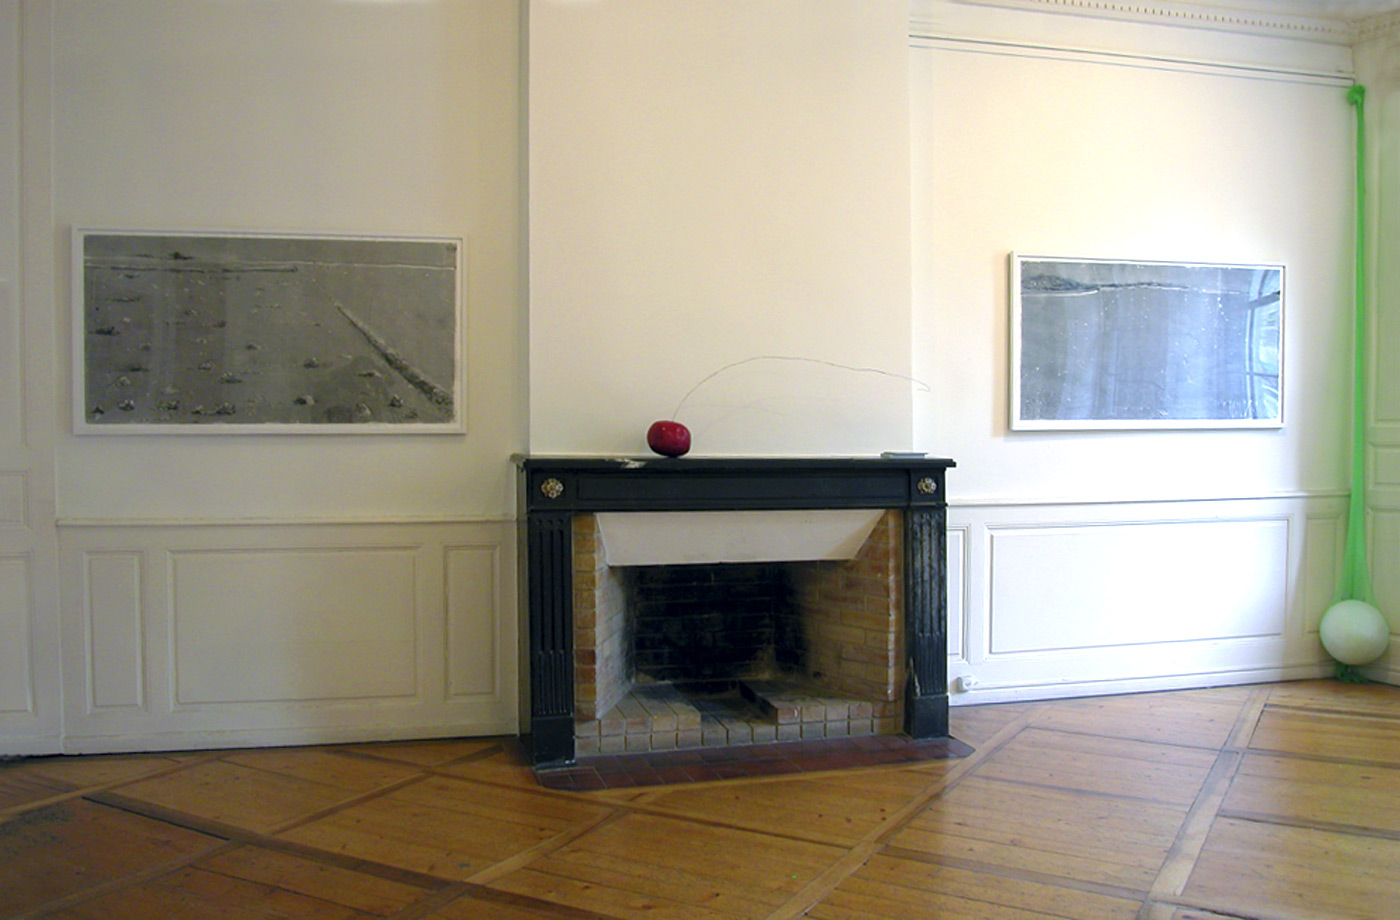 Galerie Michel Foex 2006